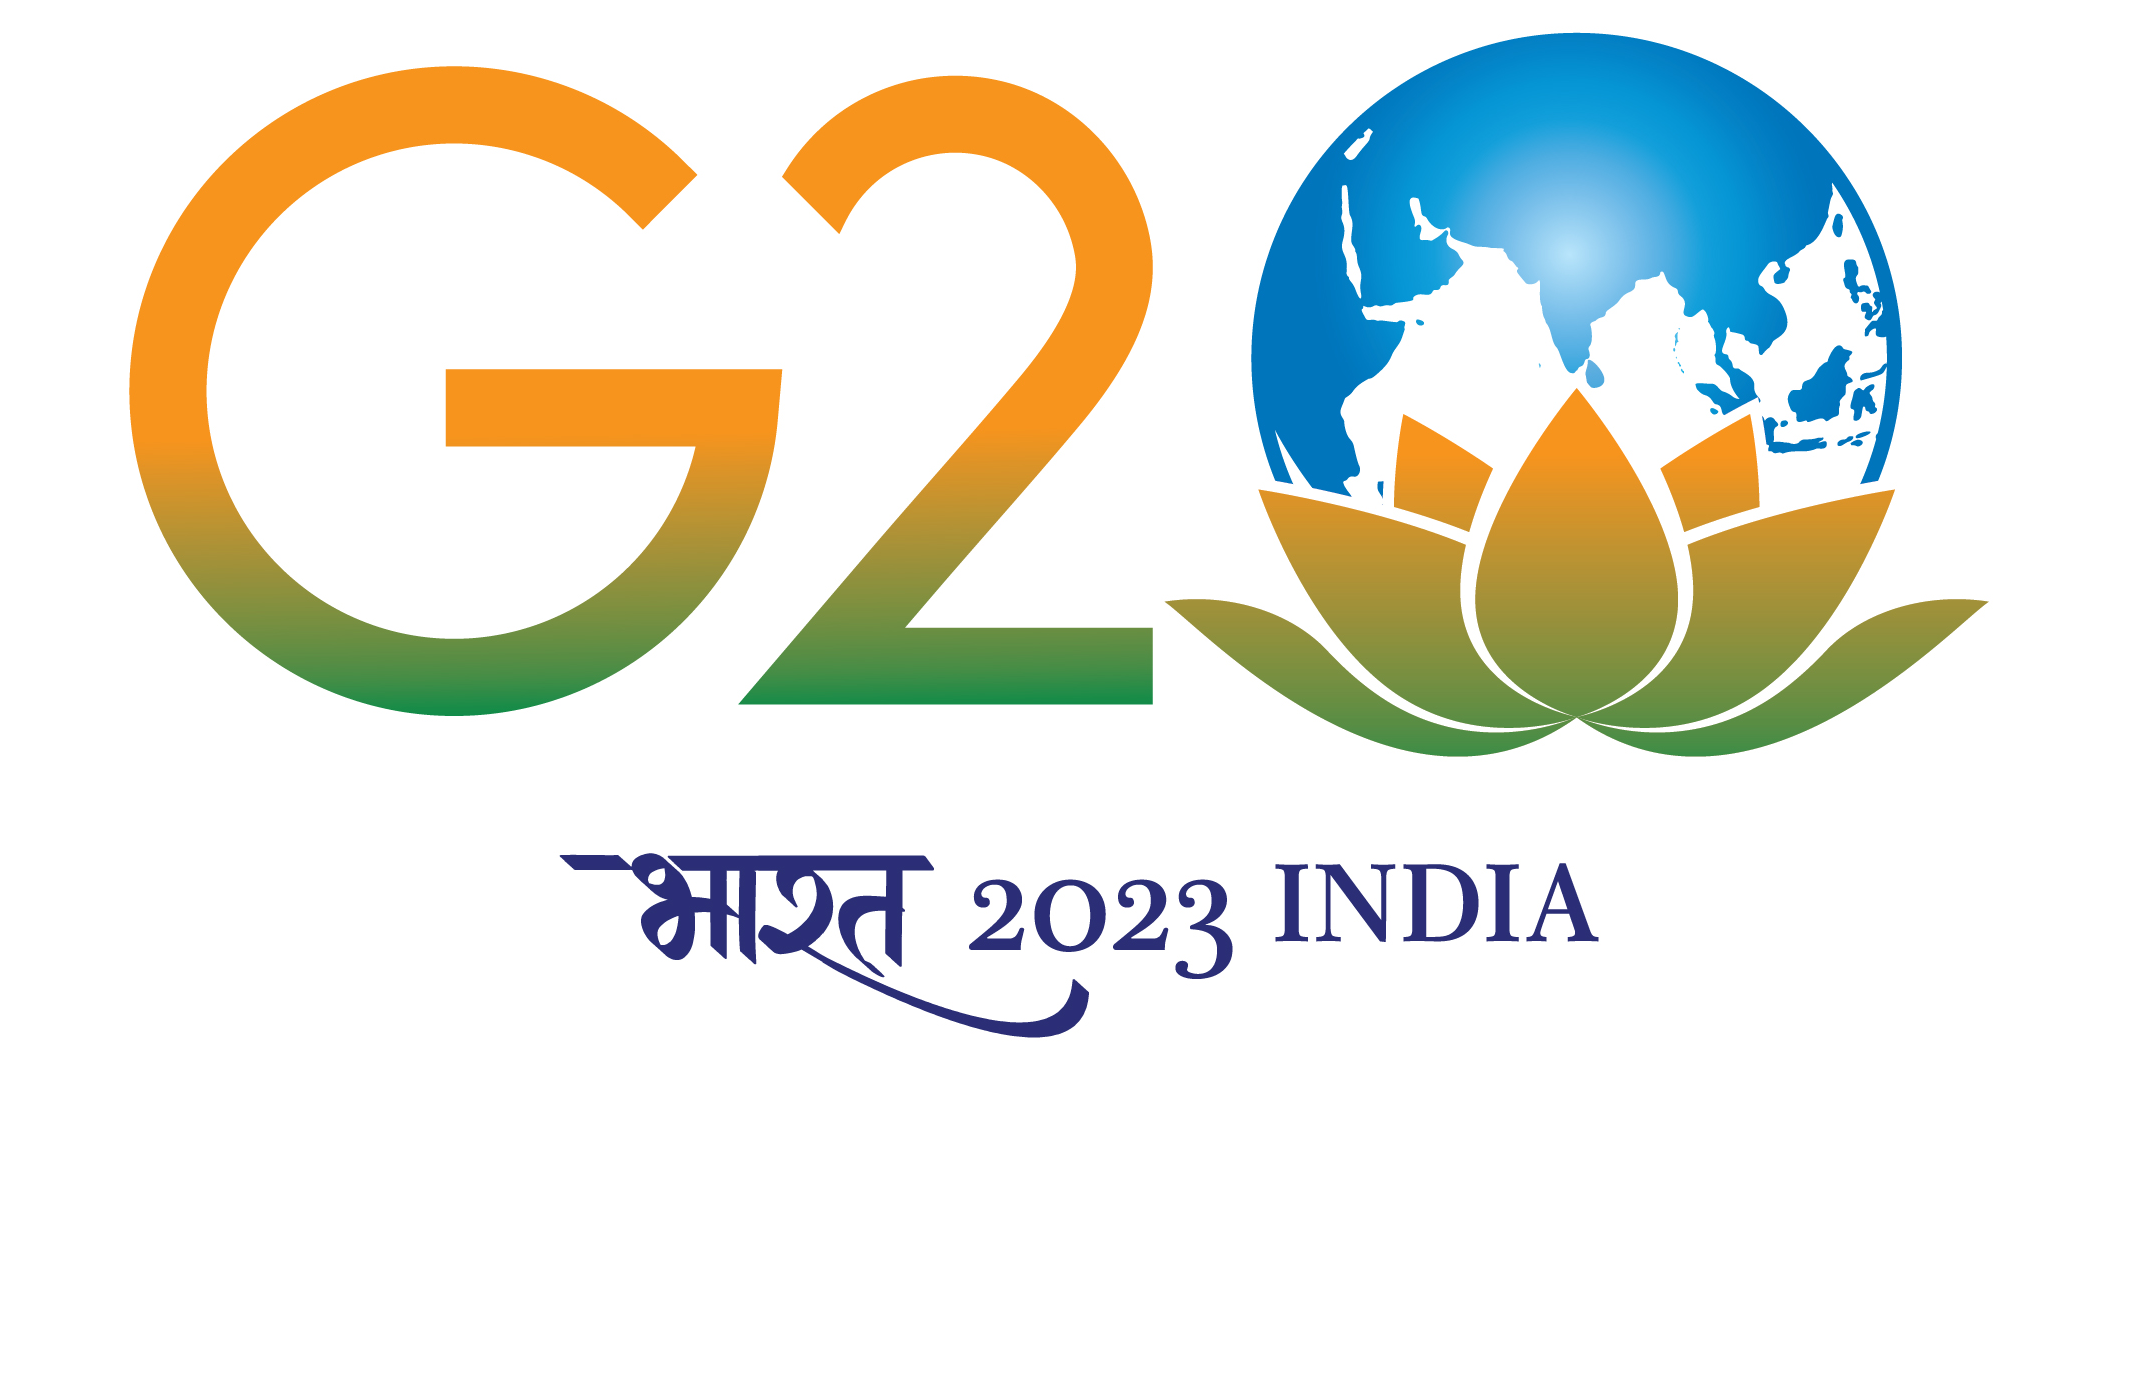 g2o logo